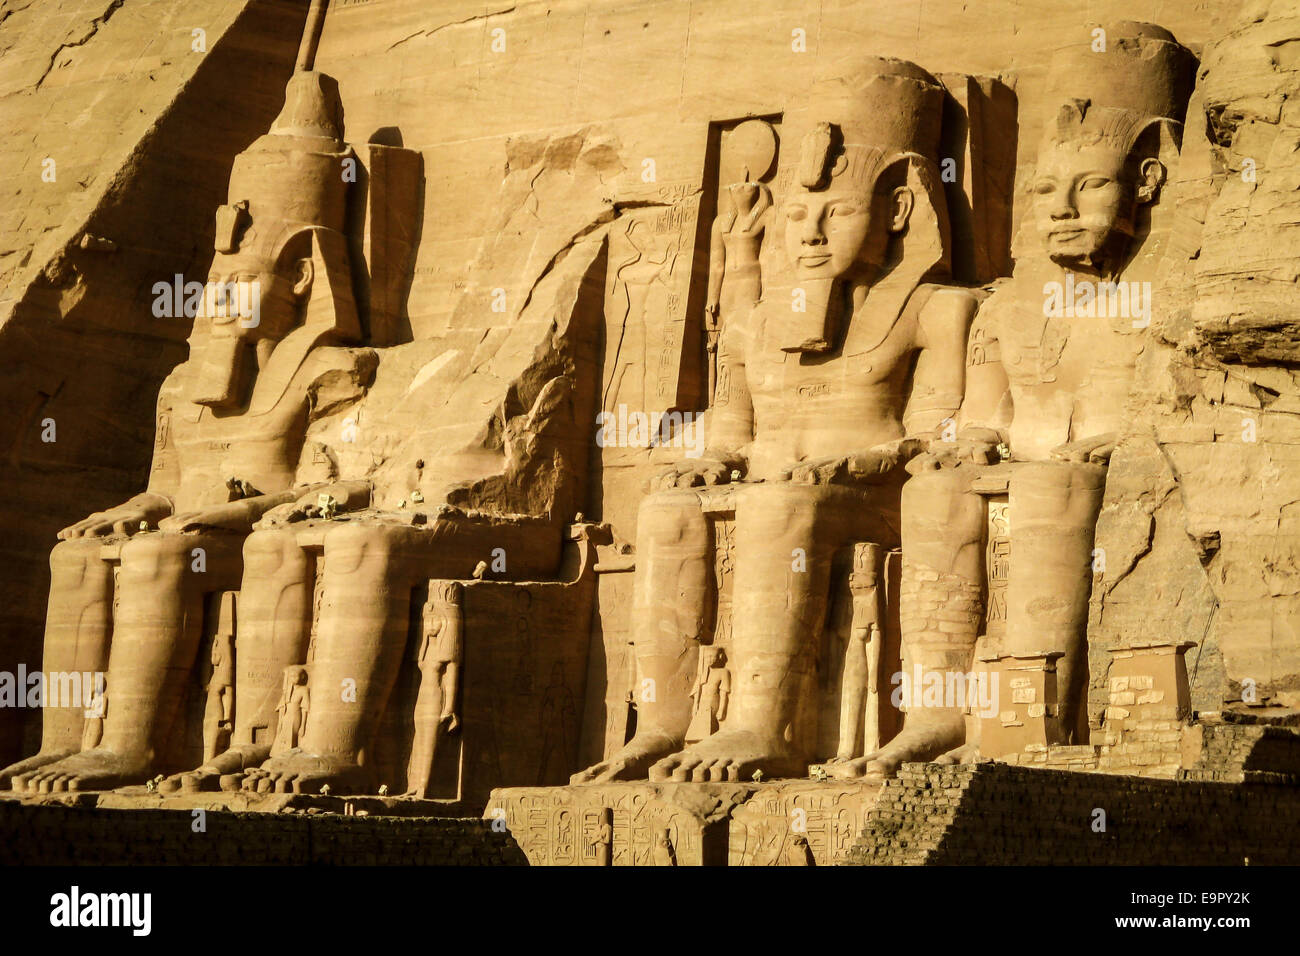 El Gran Templo de Ramsés II en Abu Simbel, en Nubia, al sur de Egipto. Foto de stock